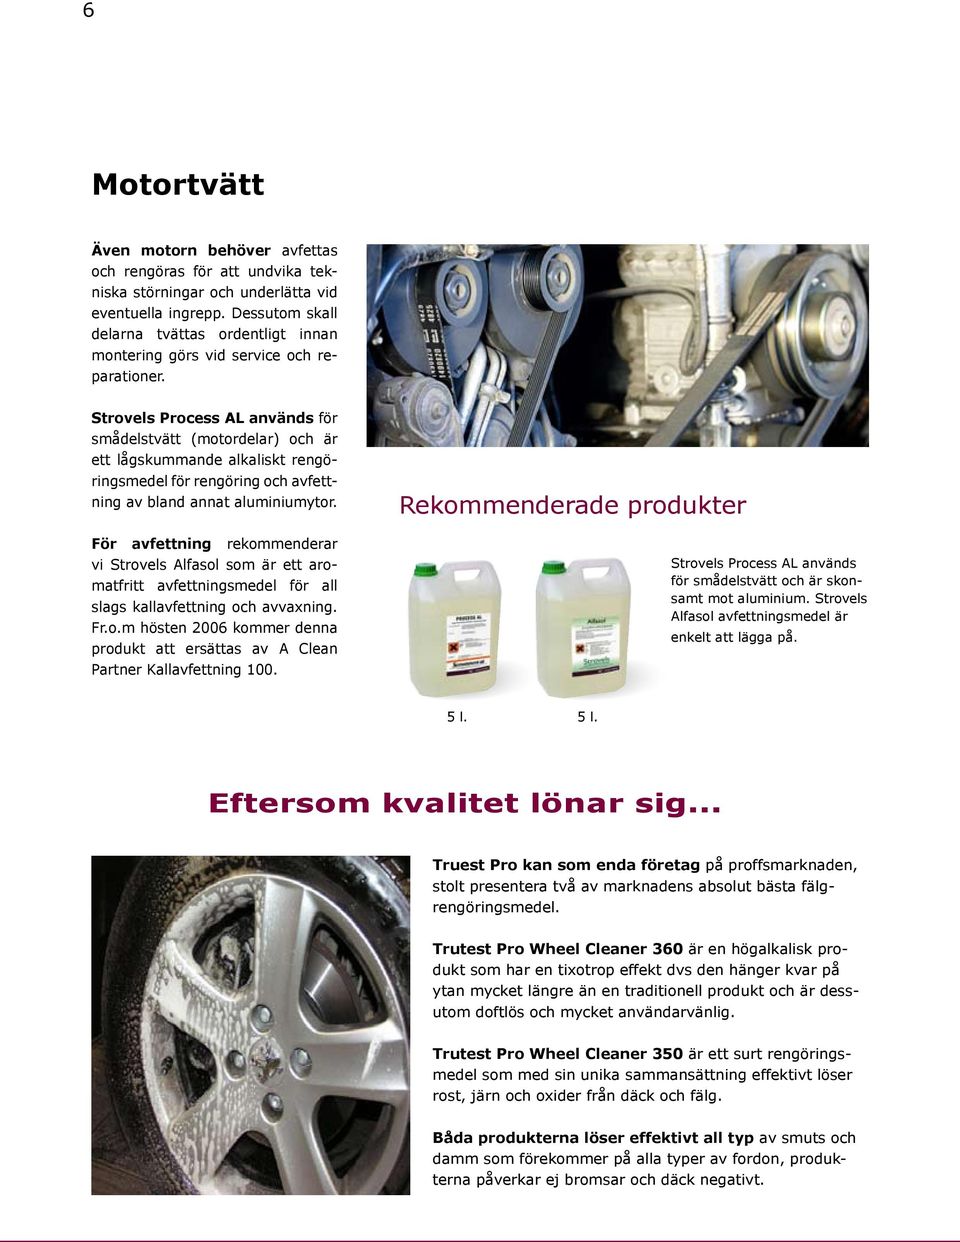 Strovels Process AL används för smådelstvätt (motordelar) och är ett lågskummande alkaliskt rengöringsmedel för rengöring och avfettning av bland annat aluminiumytor.